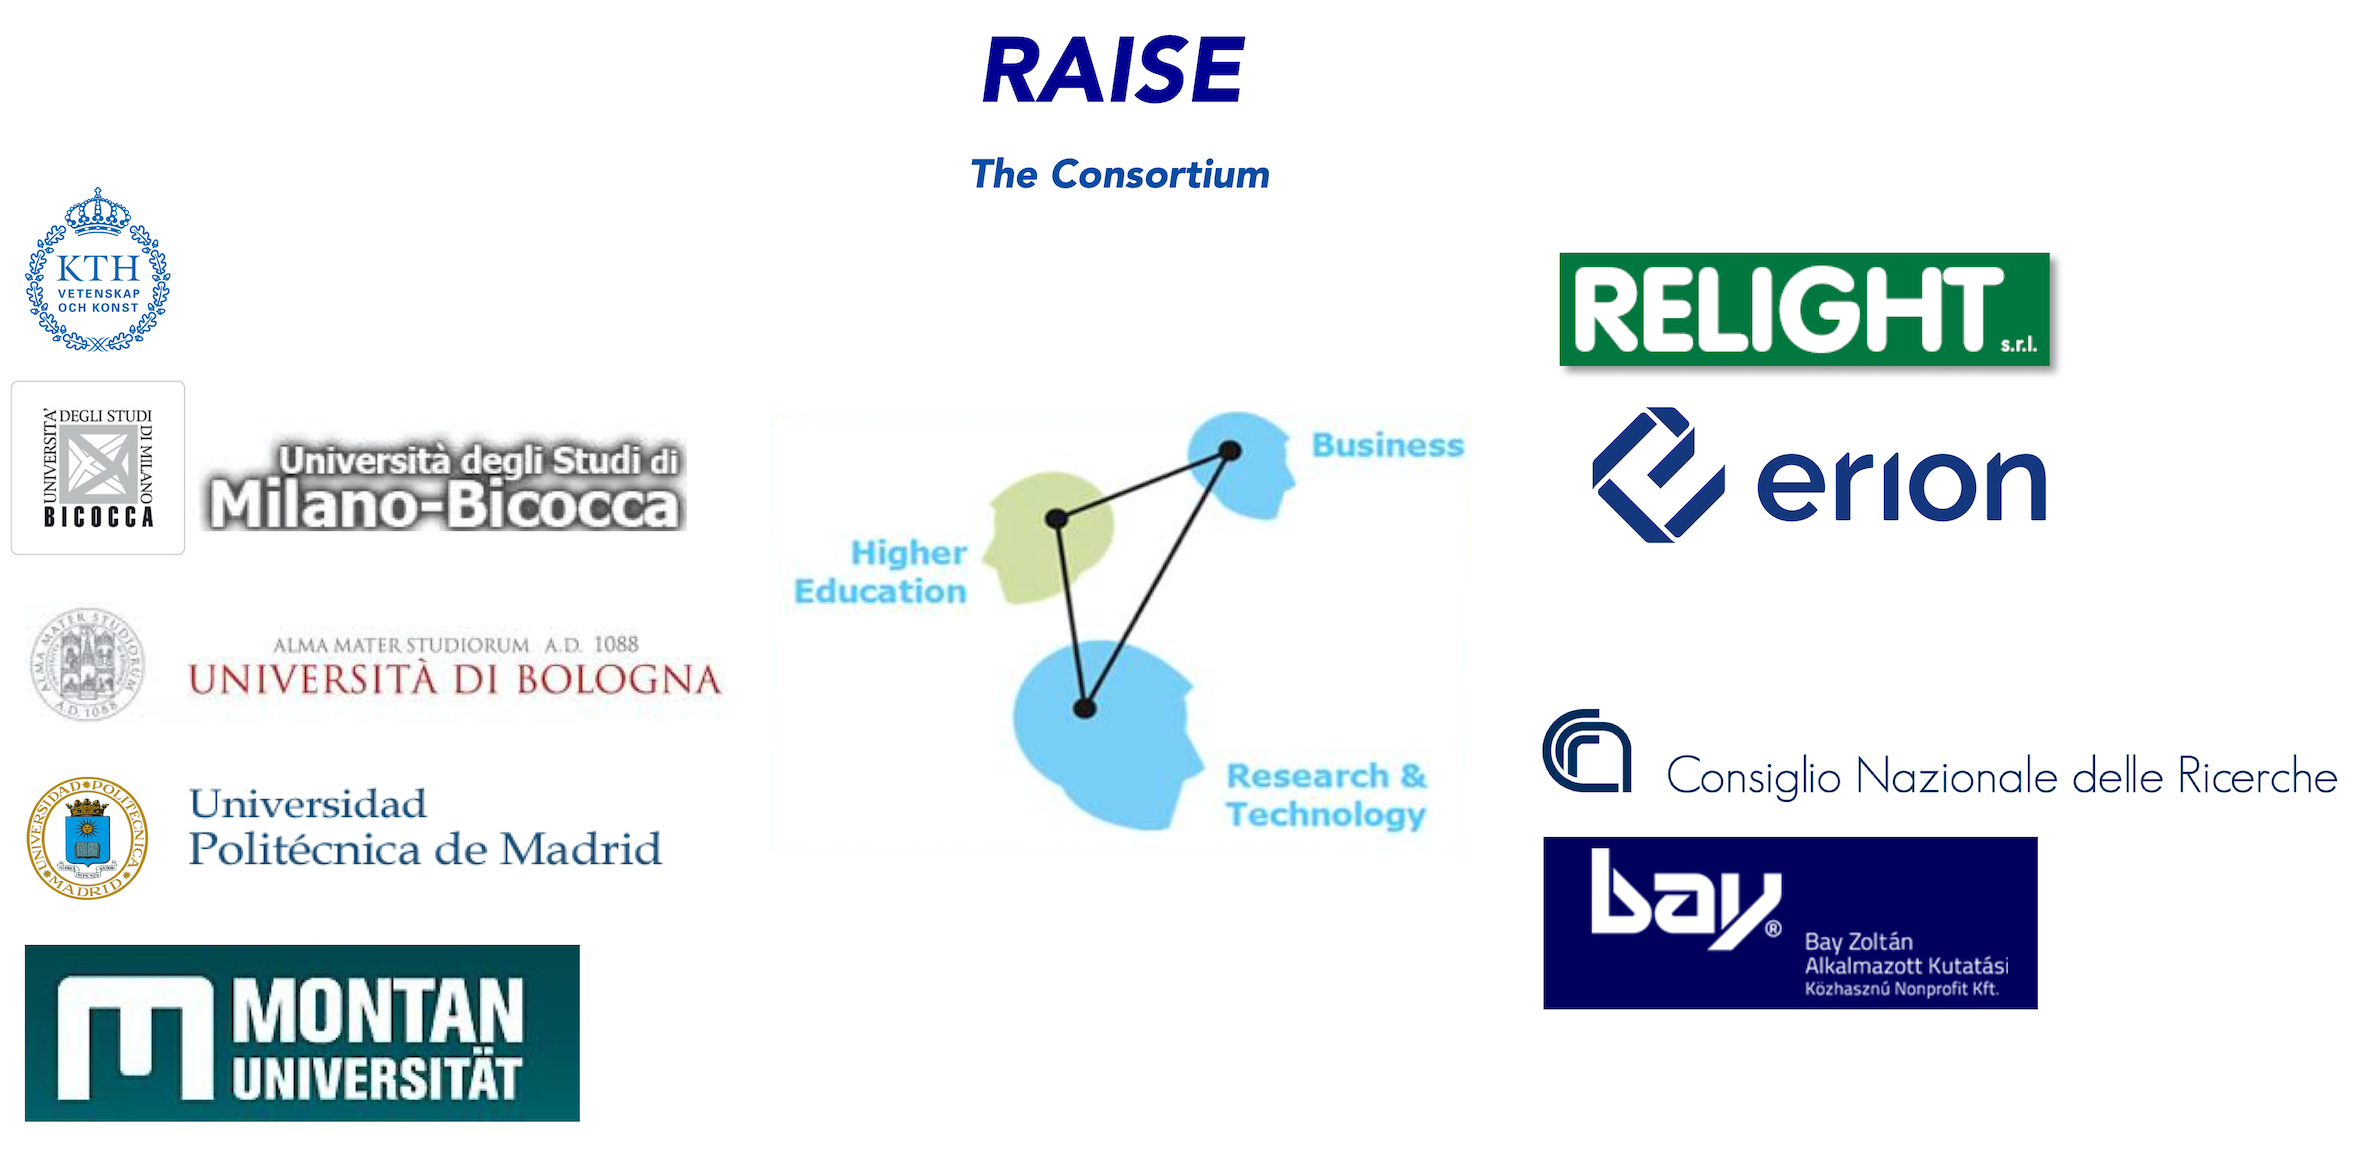 Raise Consortium